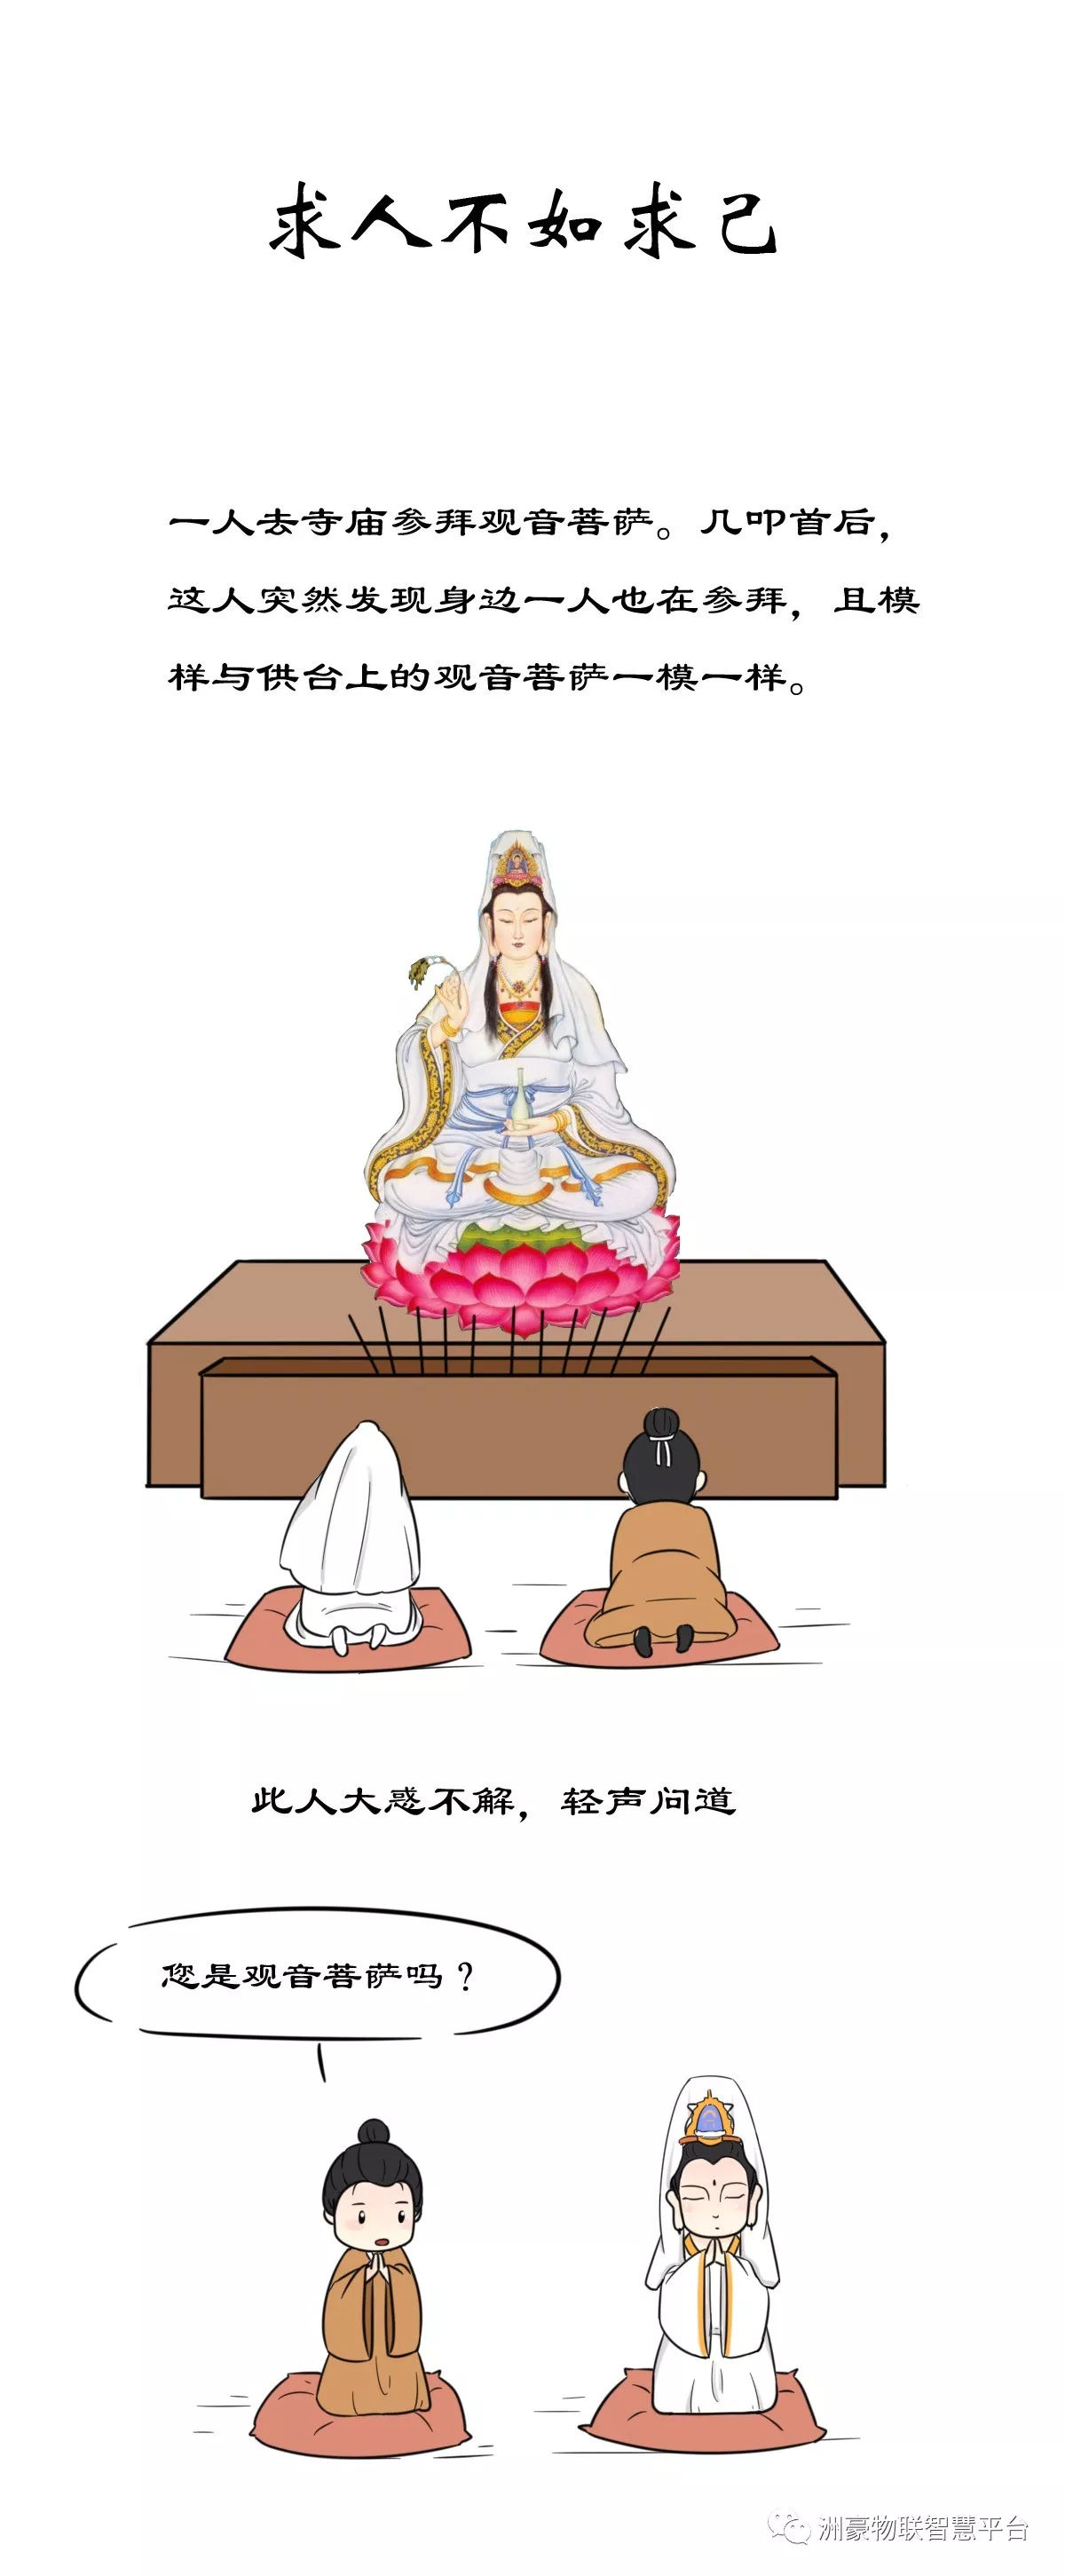 《信仰小漫畫53 - 求神應允》要向神不住禱告